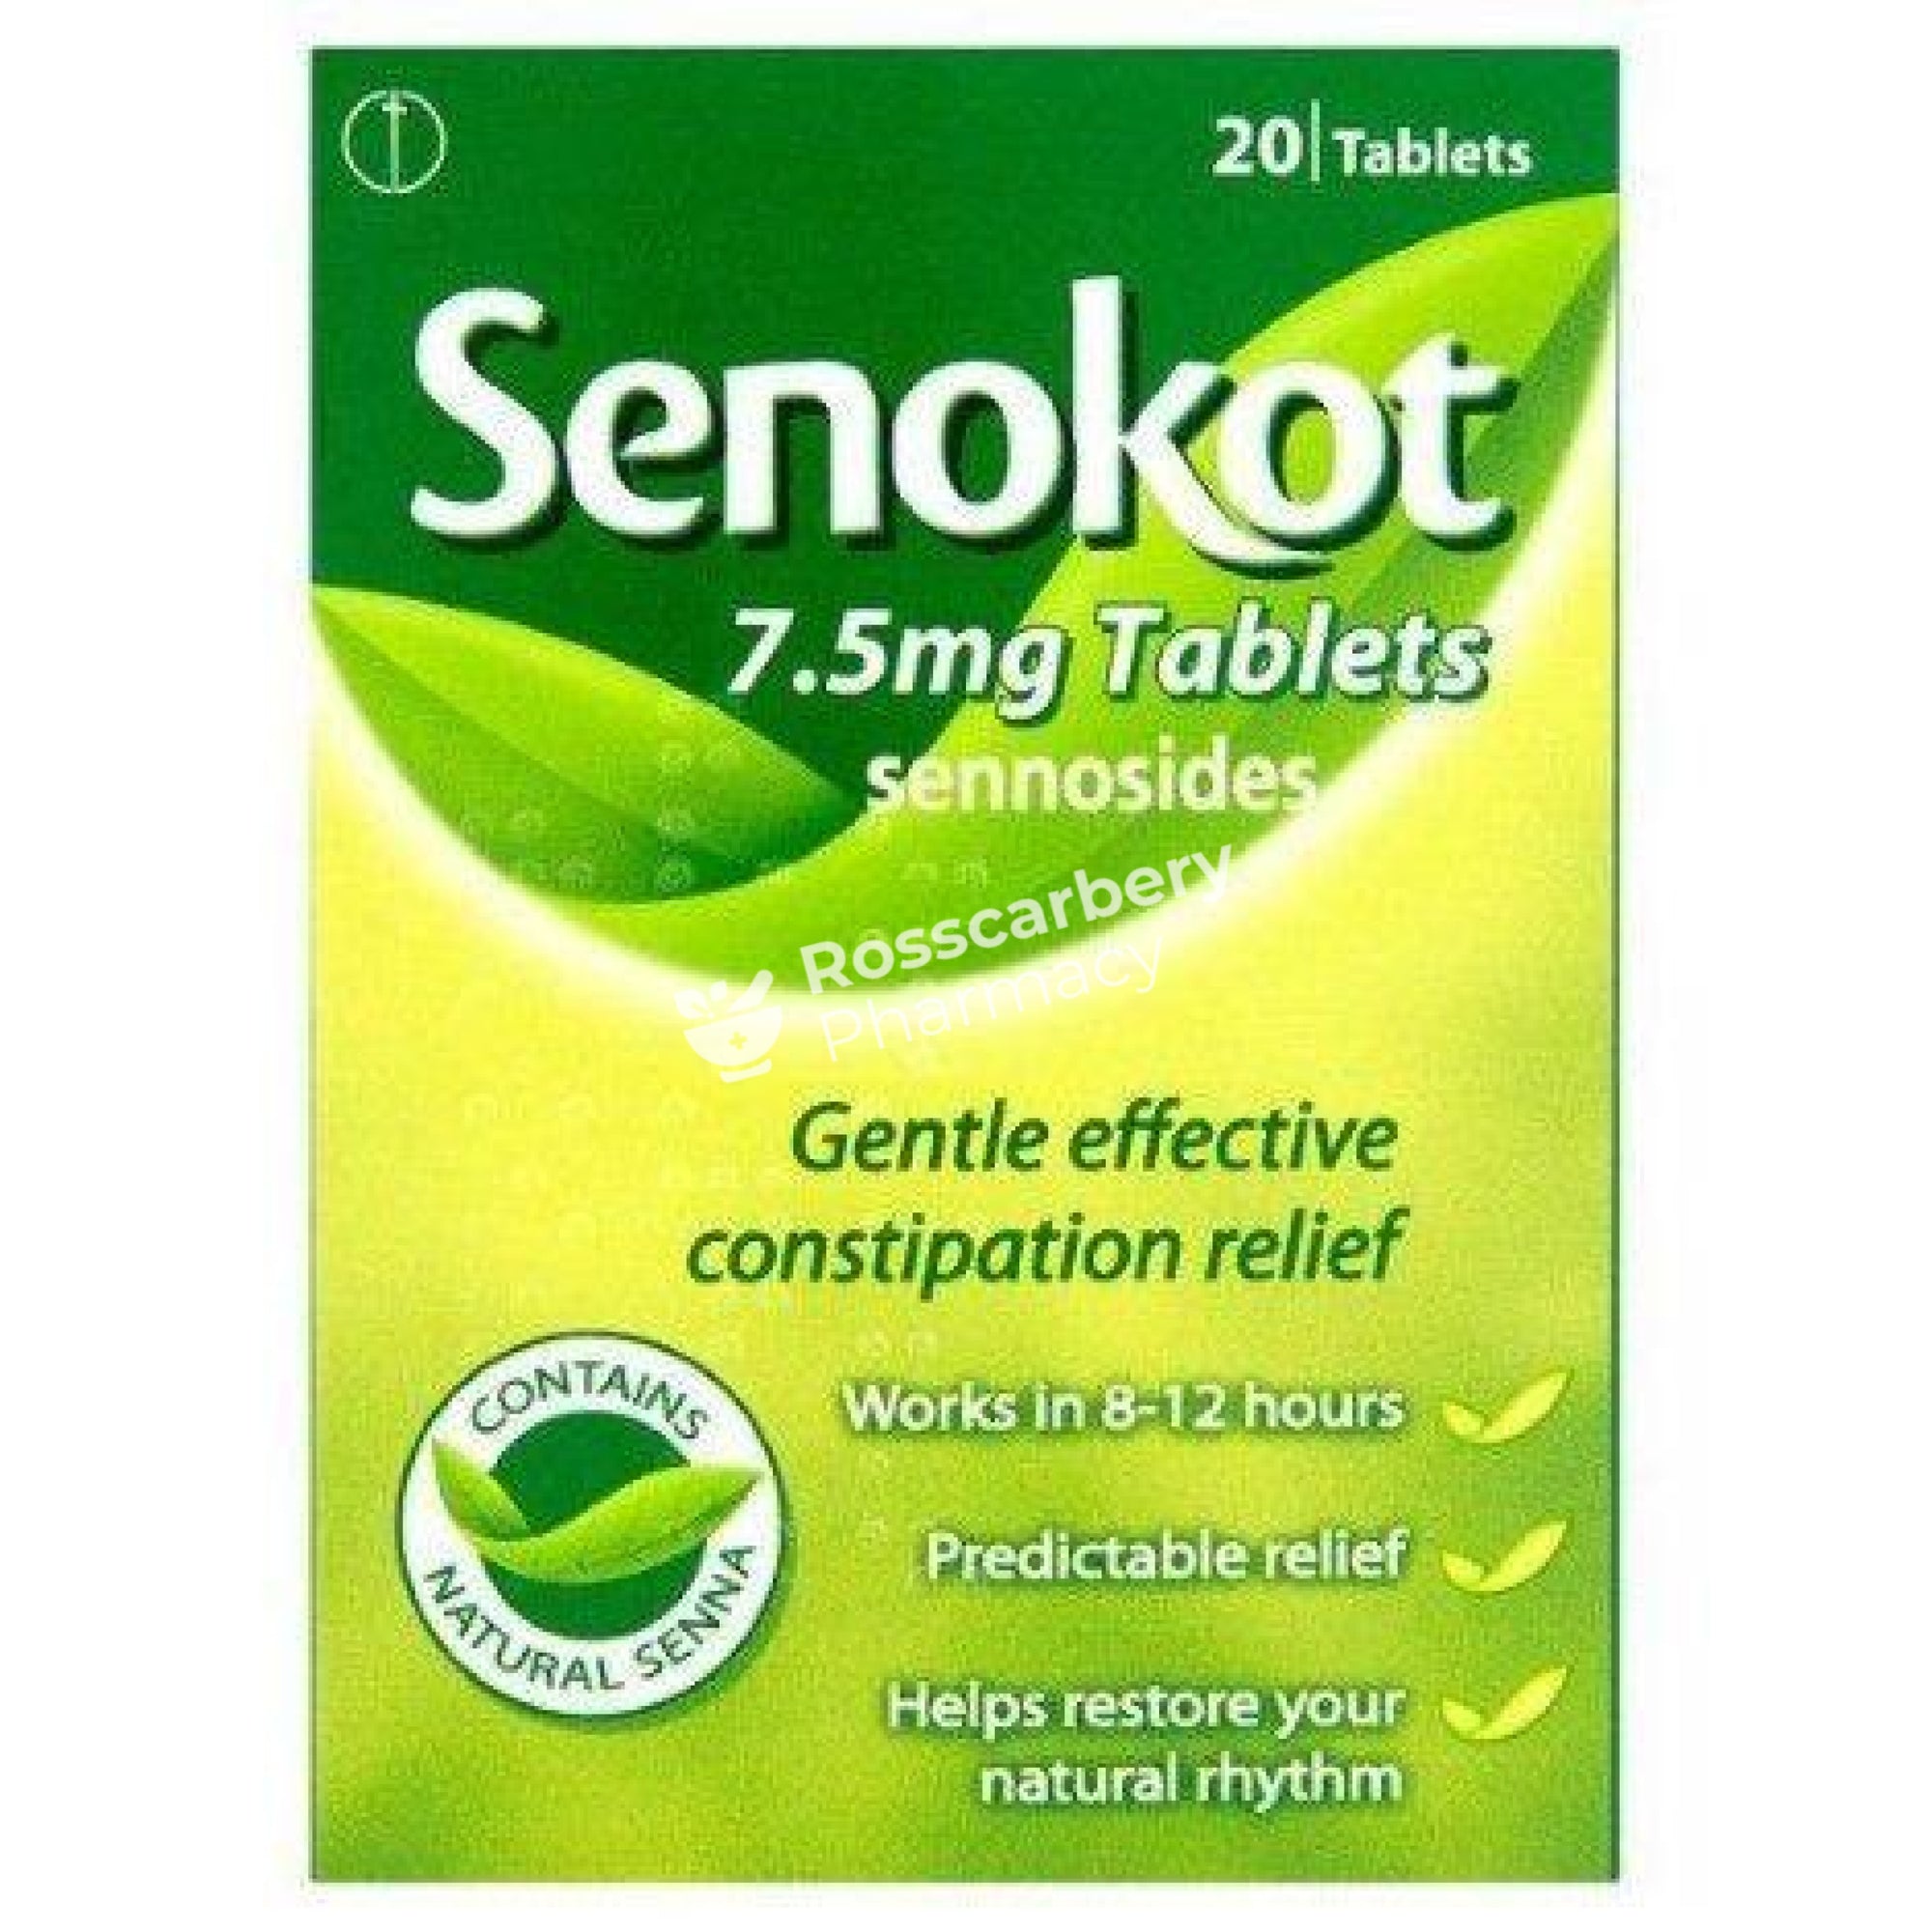 Senokot 7.5Mg Tablets Constipation